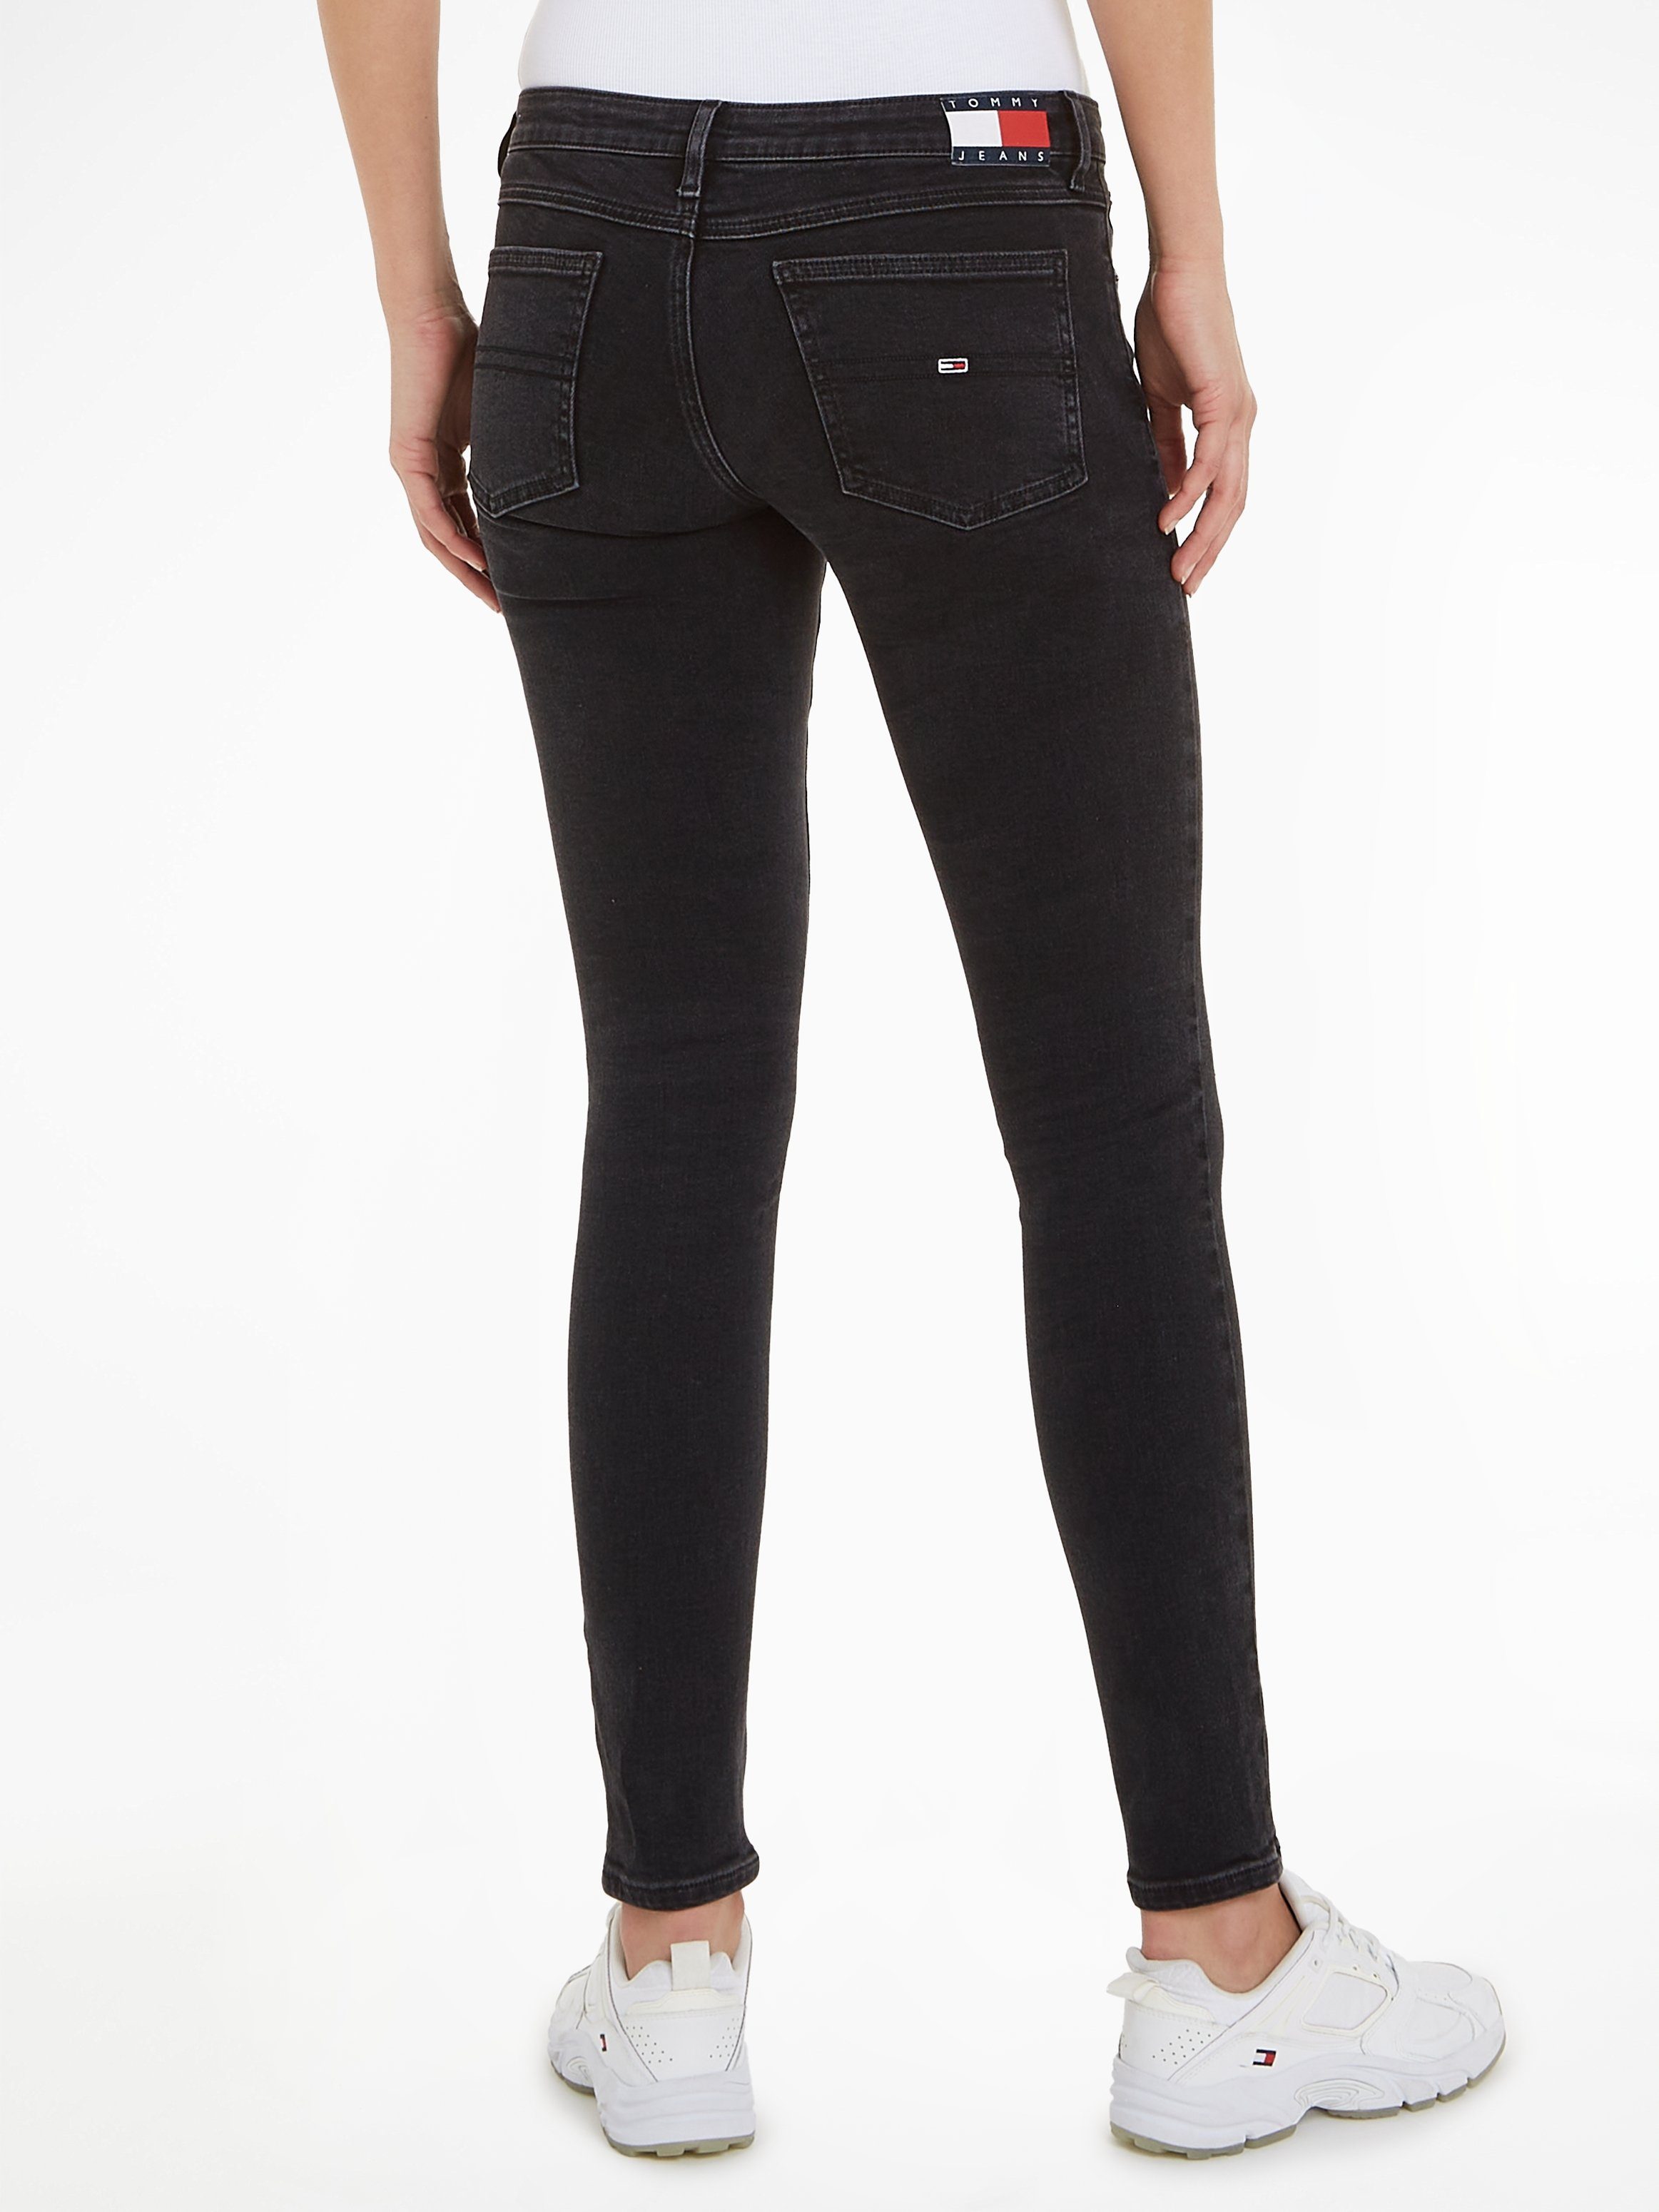 Faded-Out Effekten Skinny-fit-Jeans mit Tommy black3 Jeans